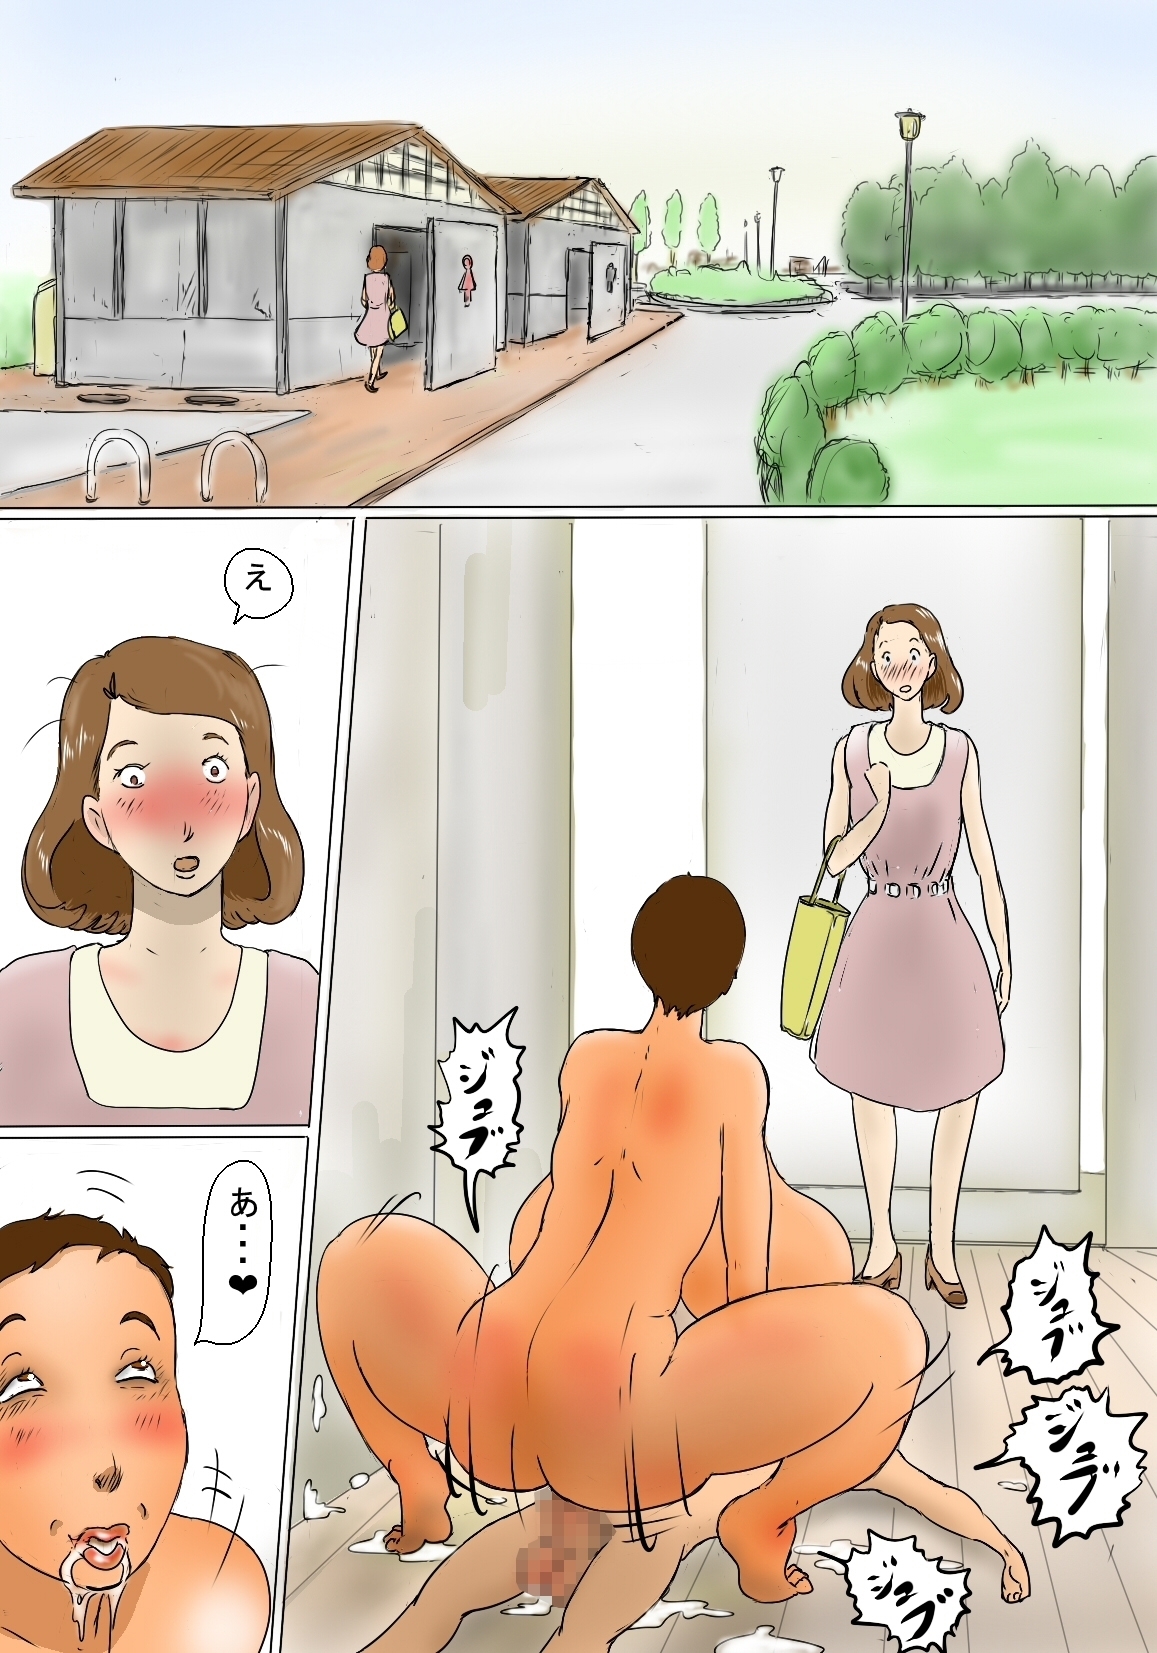 Порно комикс девушка туалет фото 29